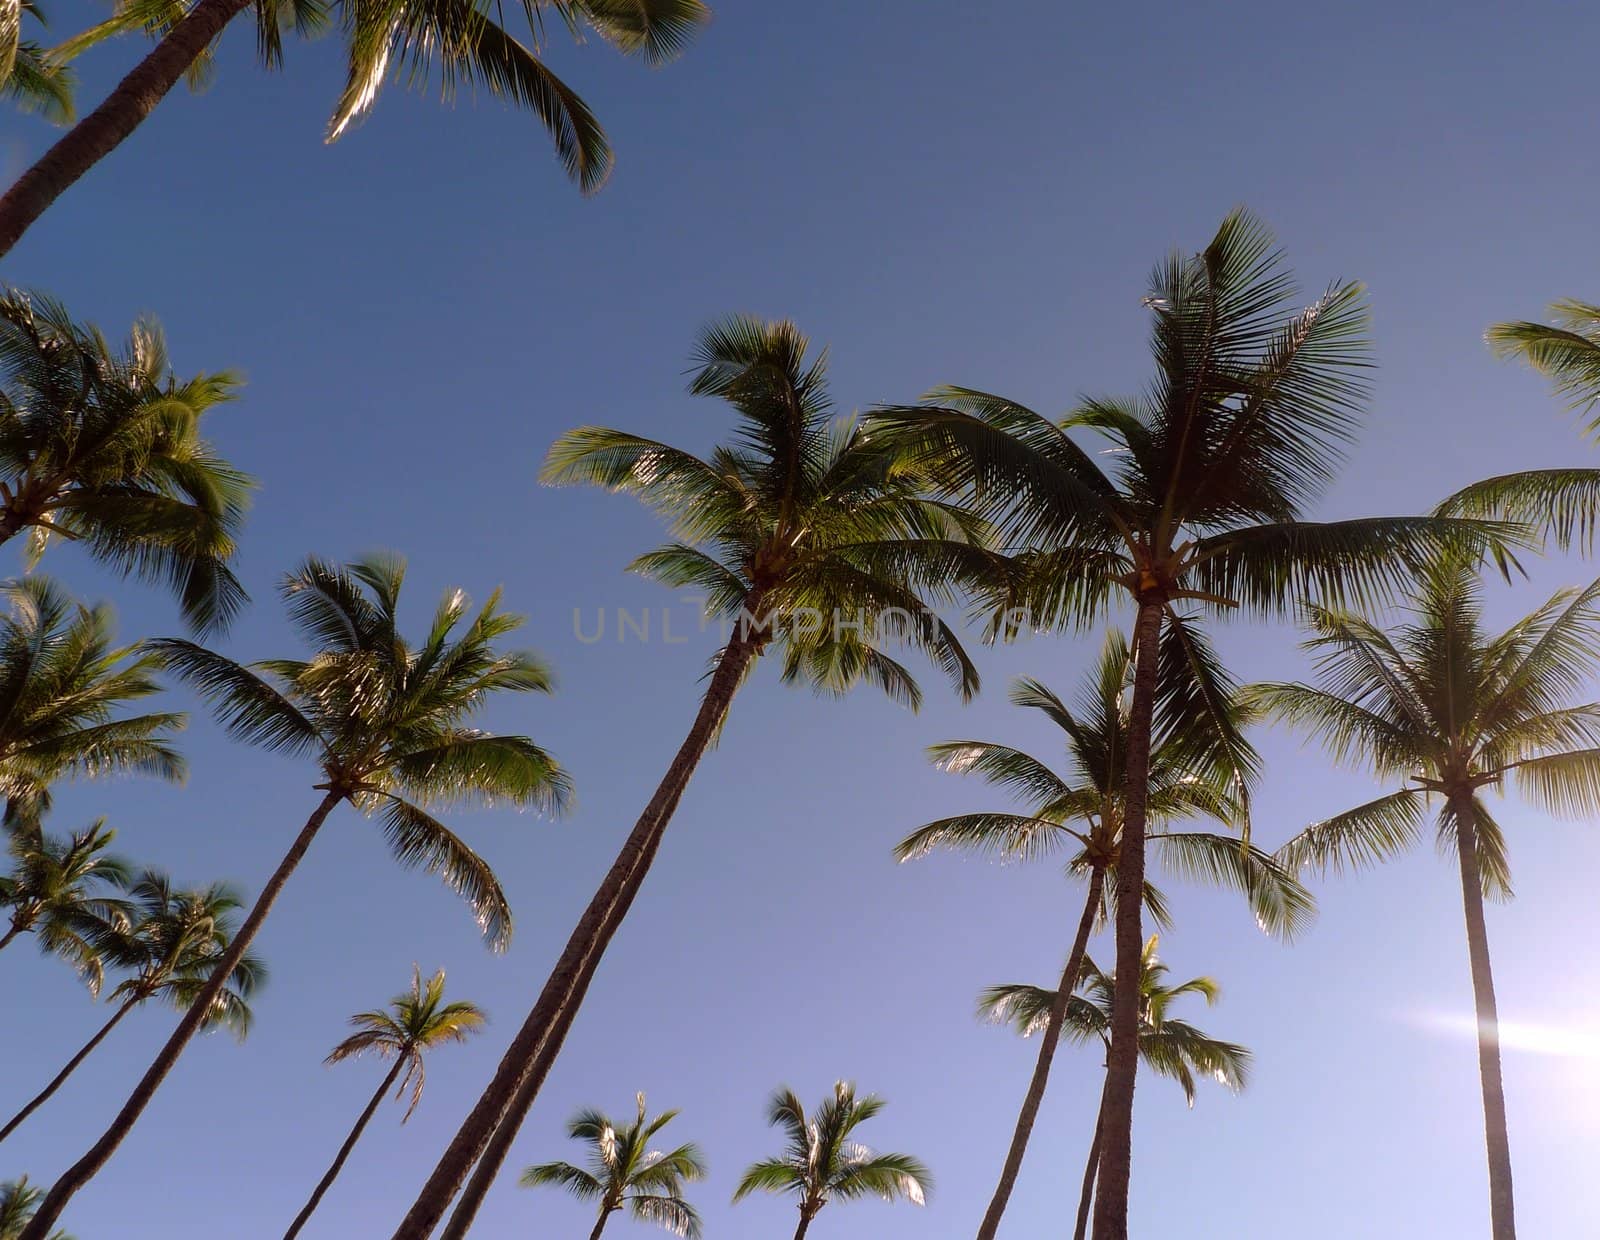 A row of palm trees on the beach